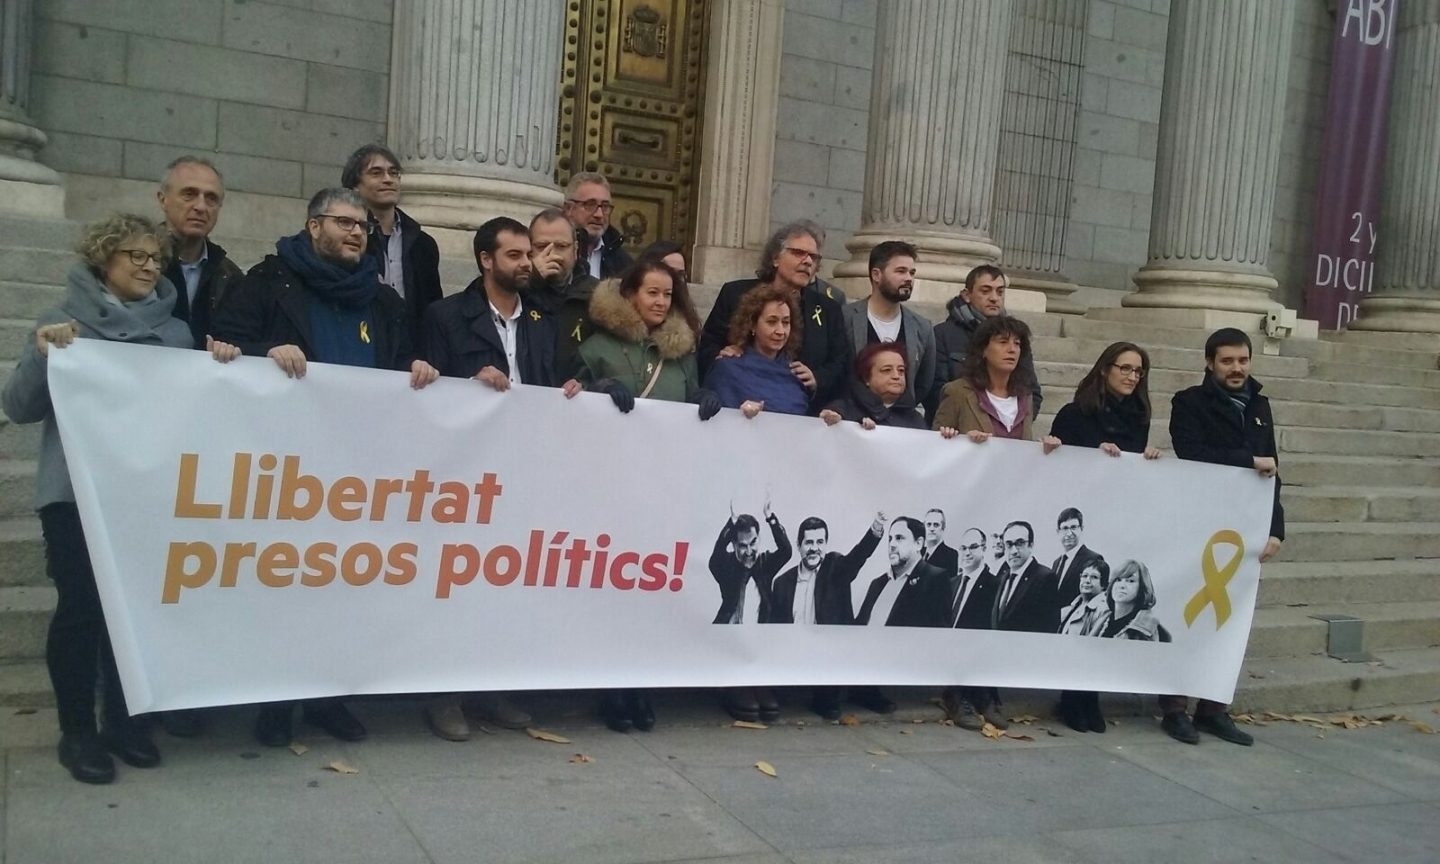 Los diputados de ERC este miércoles en la puerta del Congreso de los Diputados. para pedir la libertad de los "presos políticos"